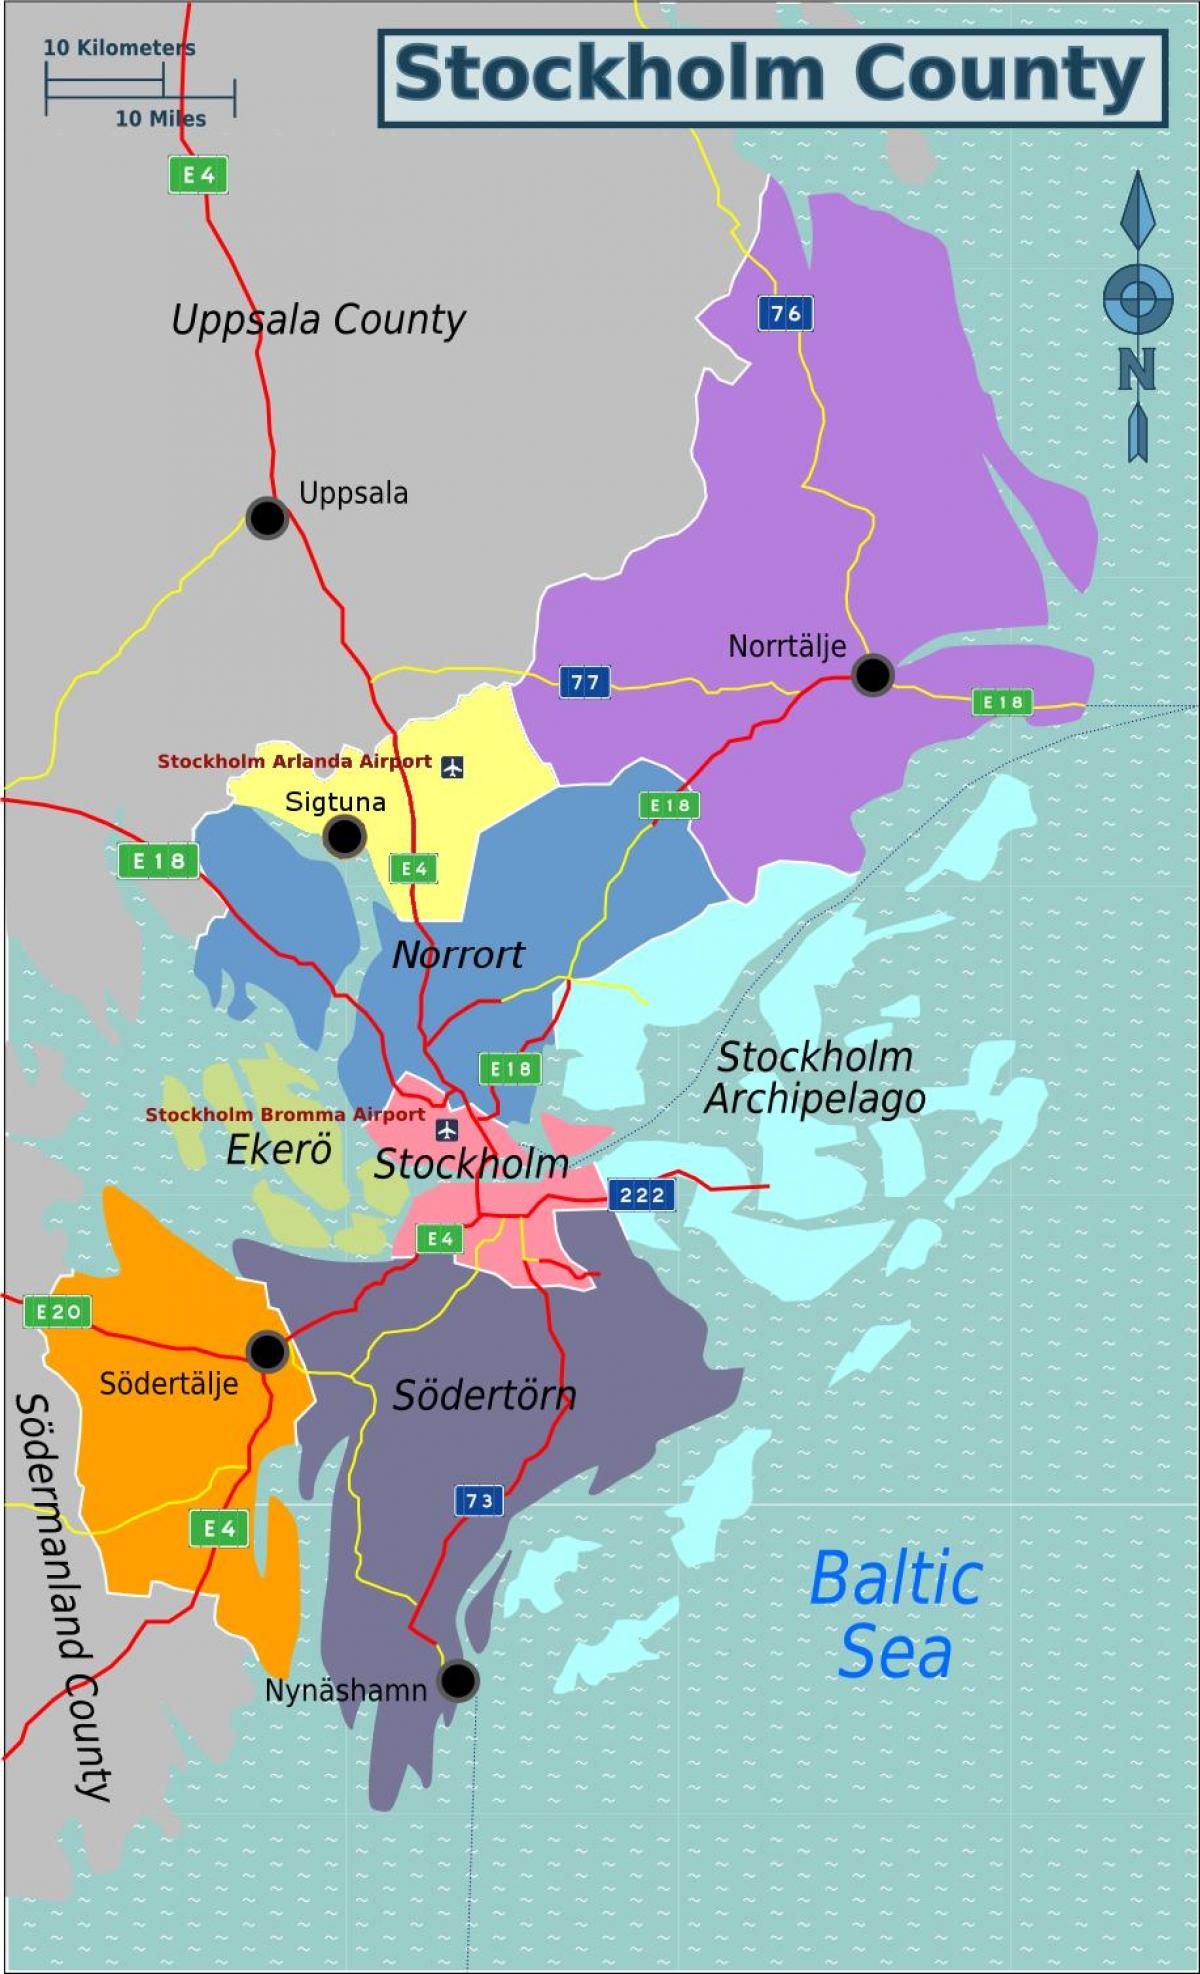 bản đồ của Stockholm county